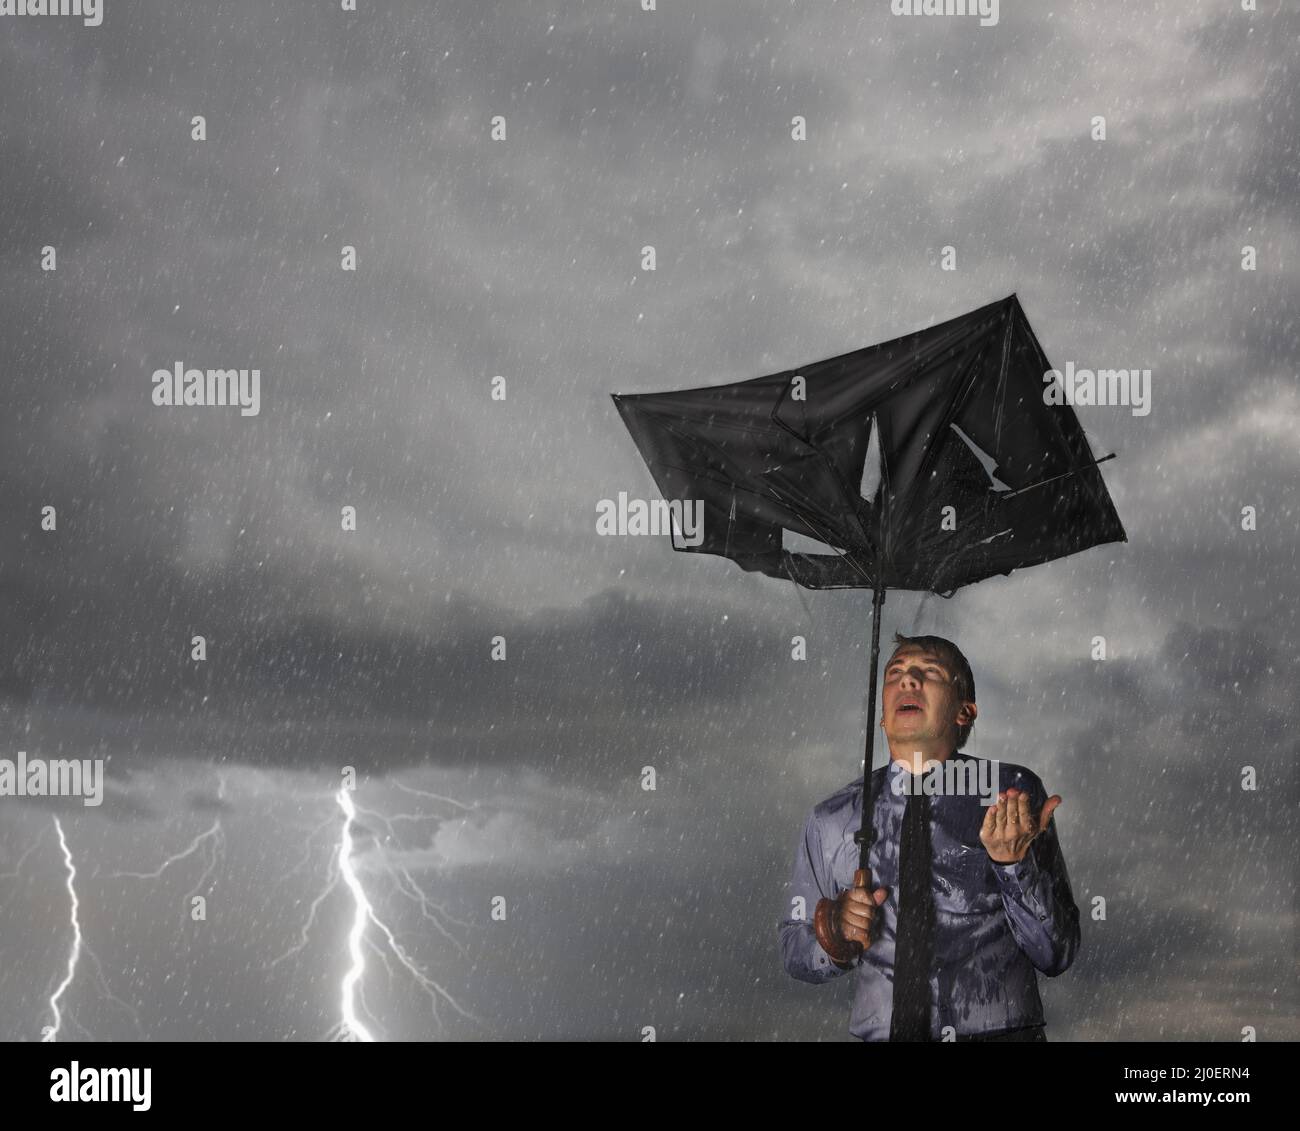 Ombrello rotto immagini e fotografie stock ad alta risoluzione - Alamy